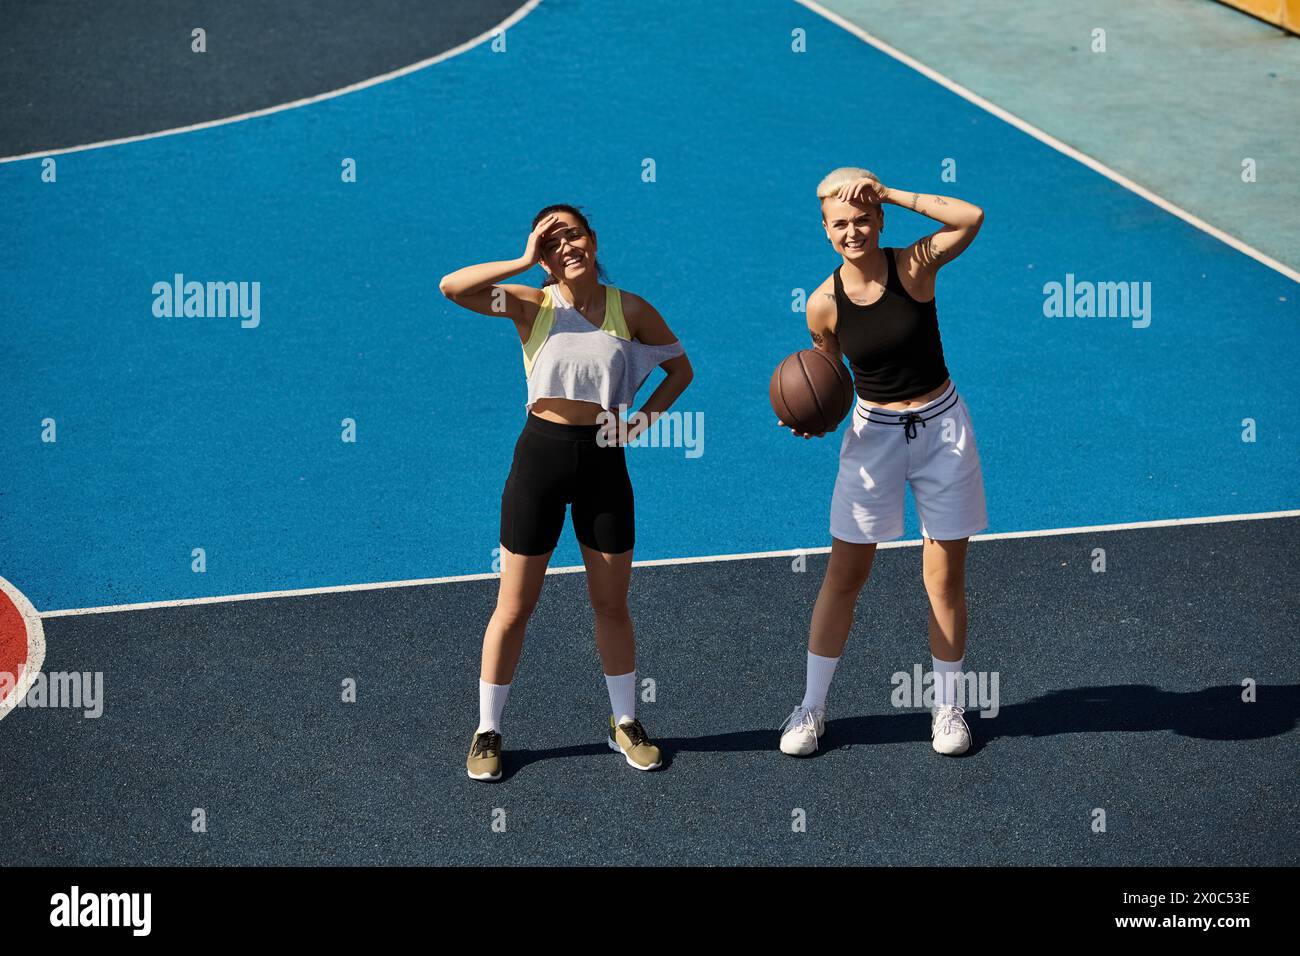 Deux femmes athlétiques se tiennent fièrement au sommet d'un terrain de basket-ball, incarnant la force et l'amitié dans le soleil d'été. Banque D'Images